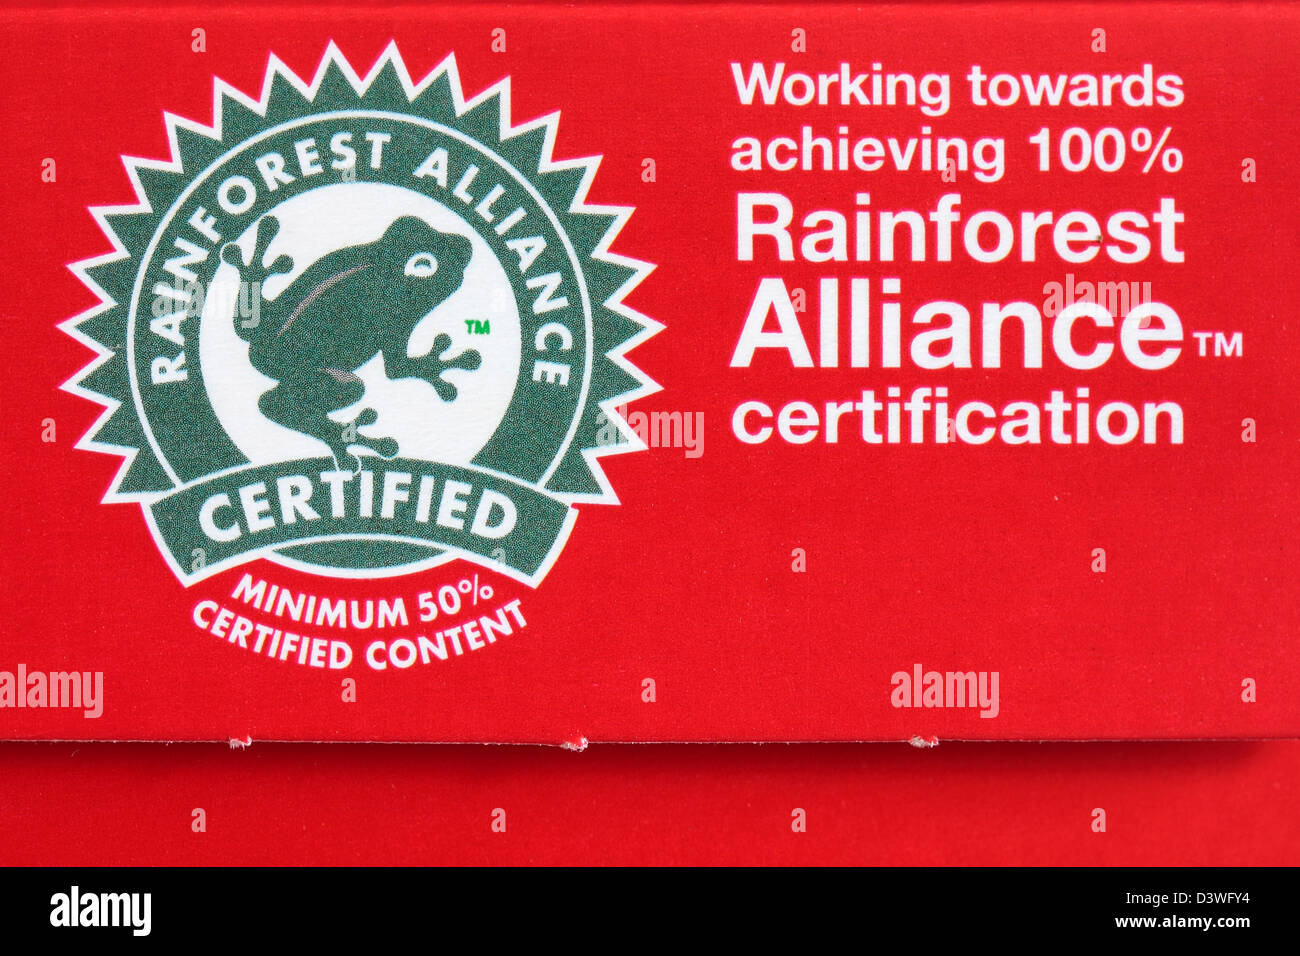 Logo Rainforest Alliance pour atteindre 100 % la certification Rainforest Alliance Banque D'Images